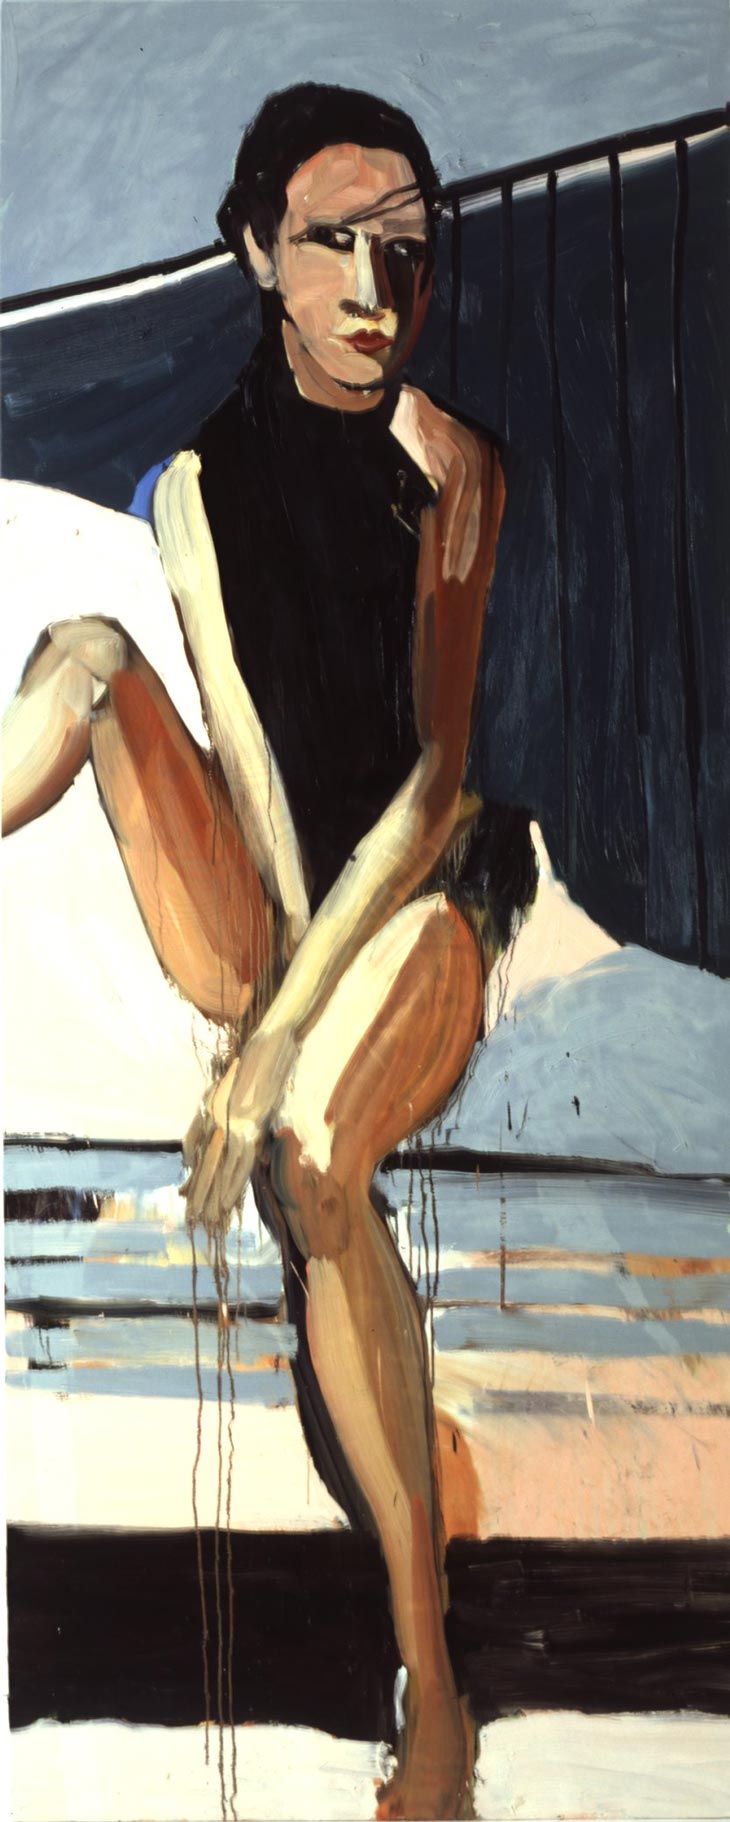 Snowy Car, 2004. Шанталь Джофф (иногда Шанталь Жоффе, англ. Chantal Joffe) - британская художница. Современная живопись. Contemporary art, paintings